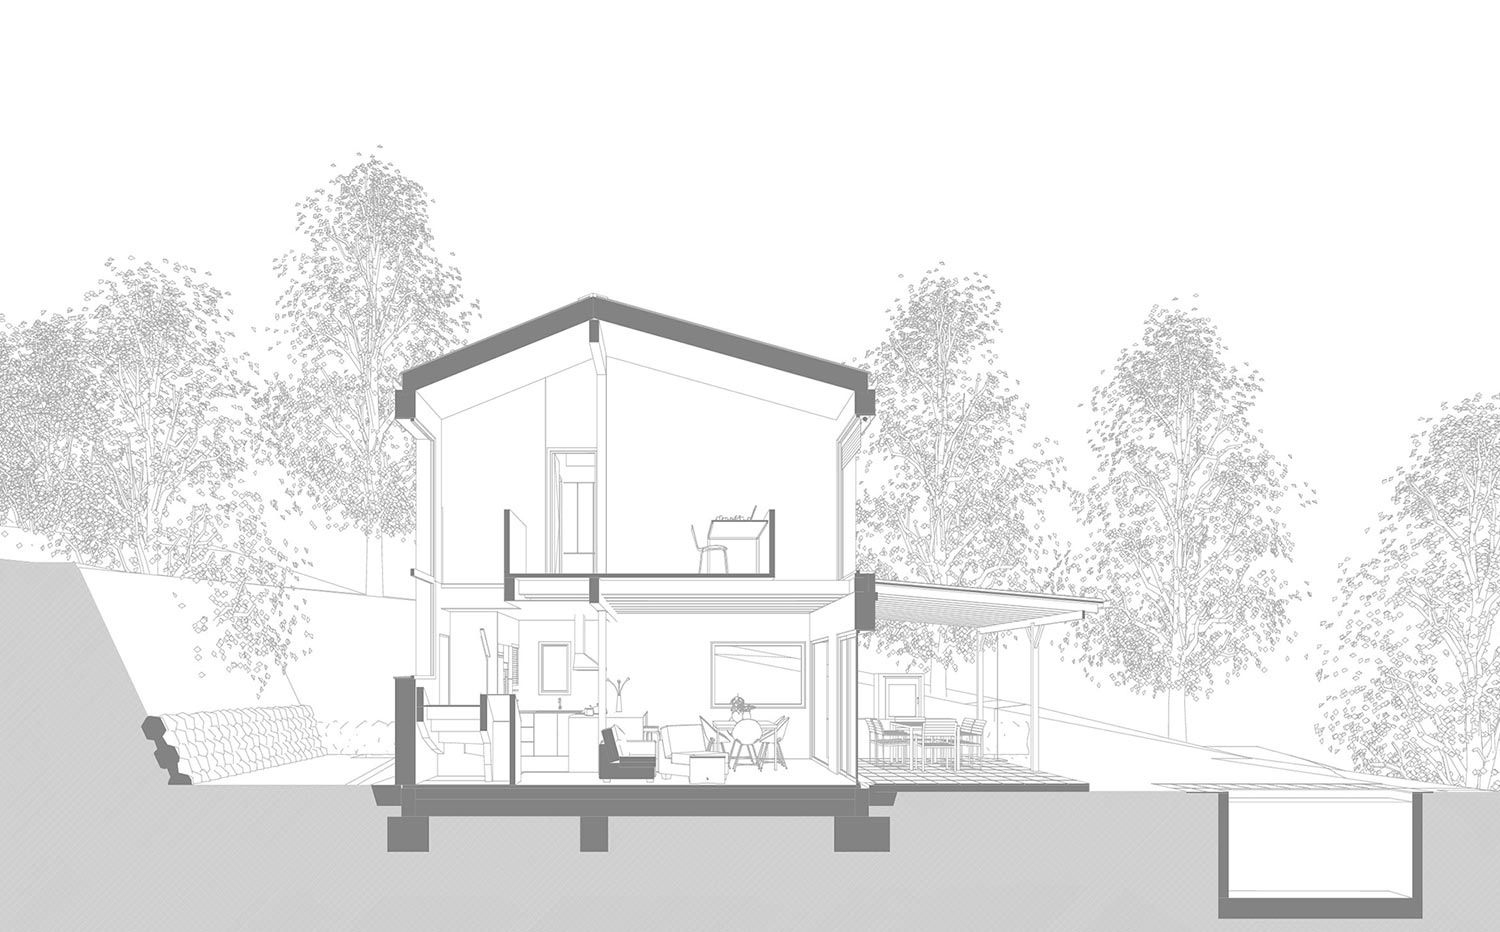 BUD Arquitectura - Casas sanas. Casa Roots. Casa sostenible, ecoeficiente de madera, plano